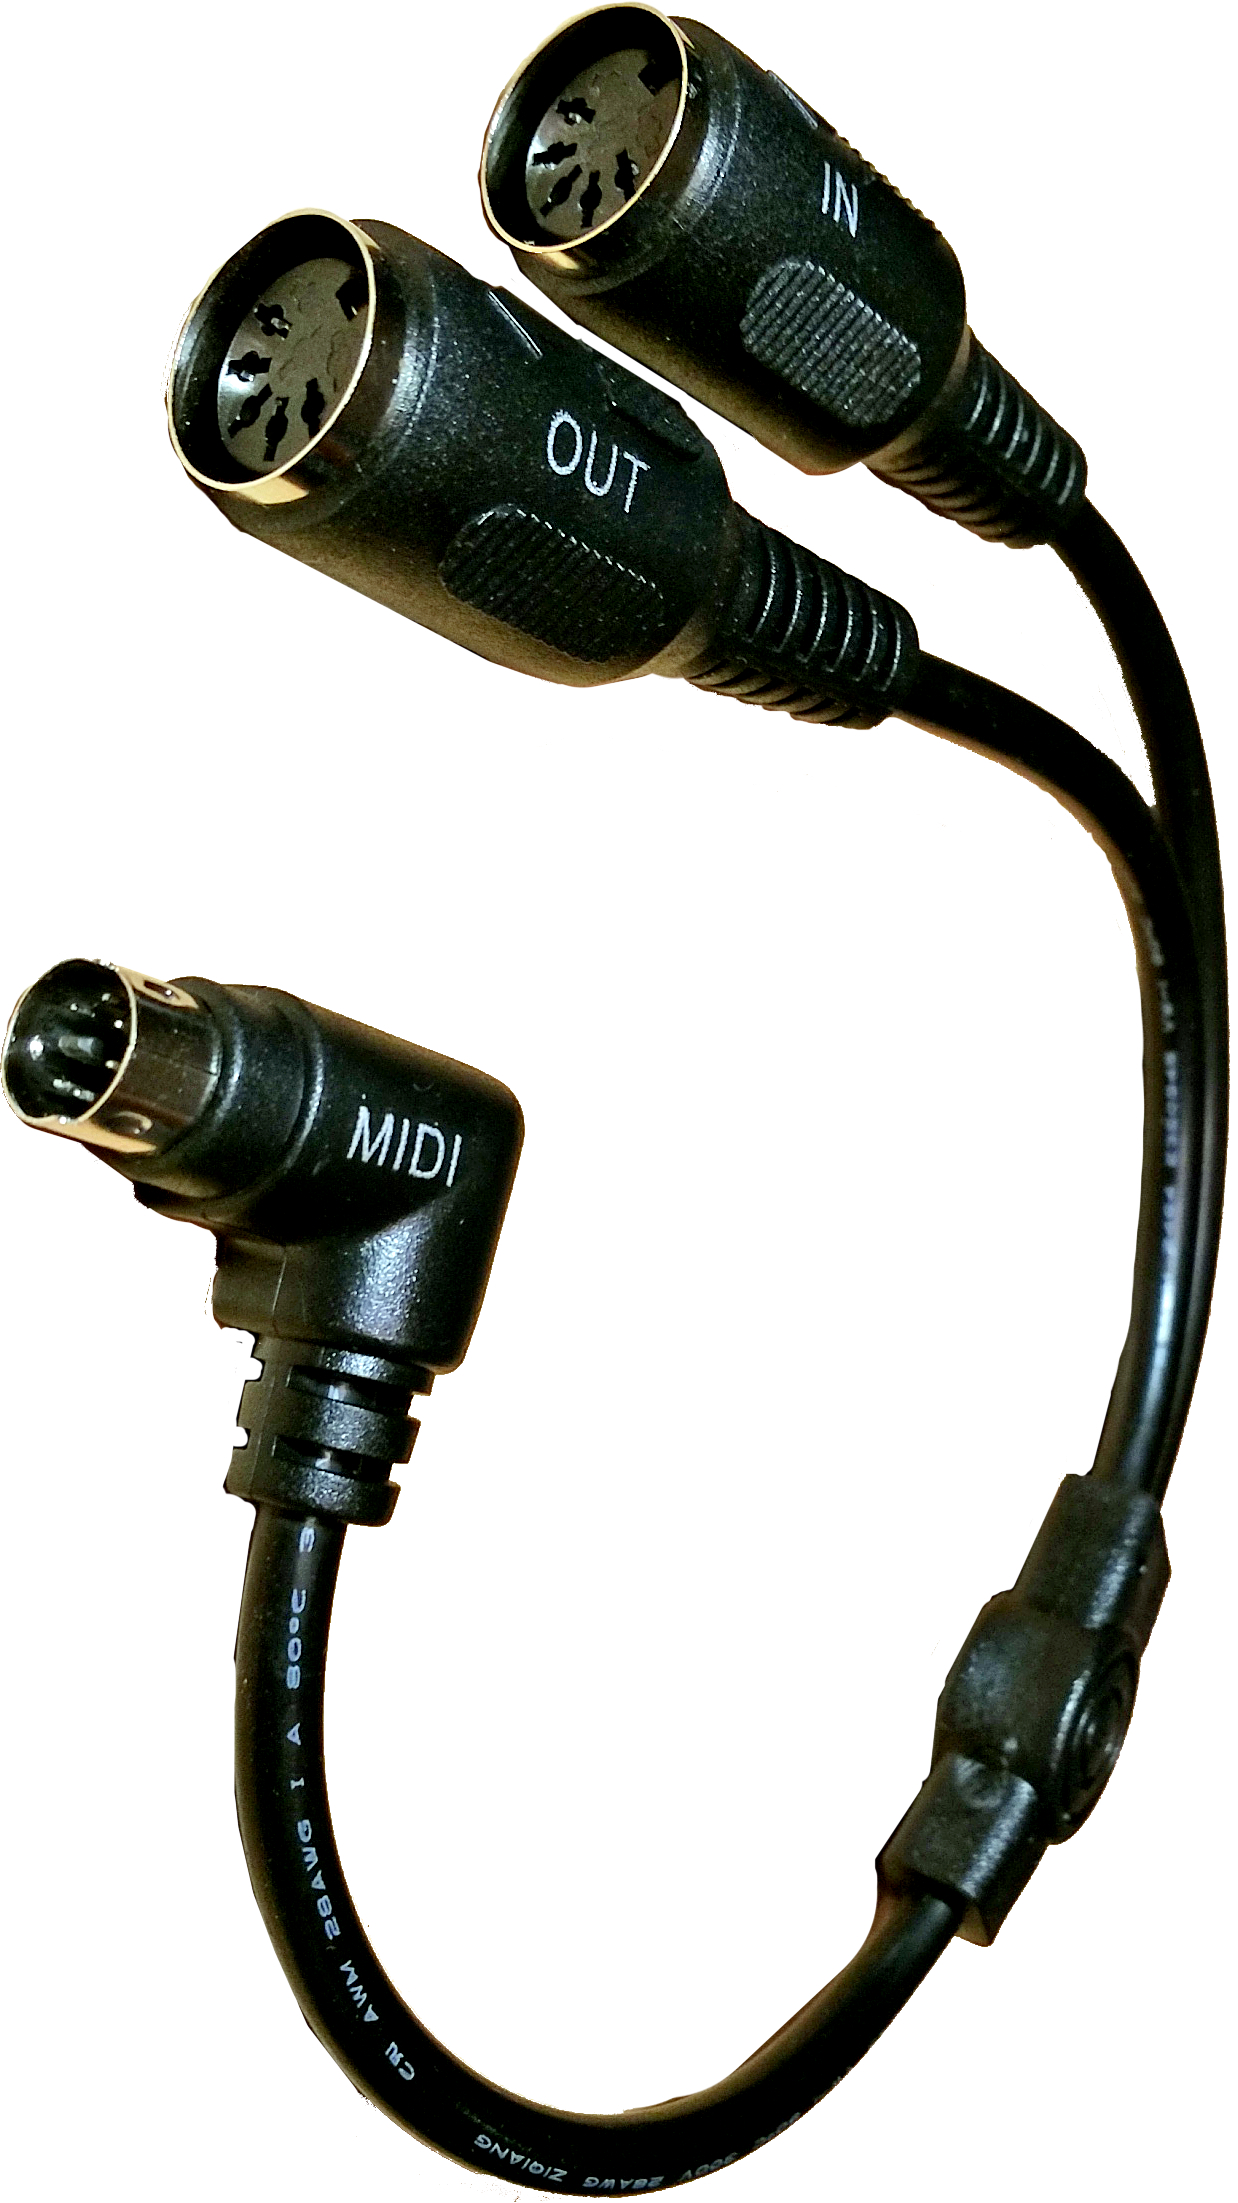 MIDI Sync Breakout Cable